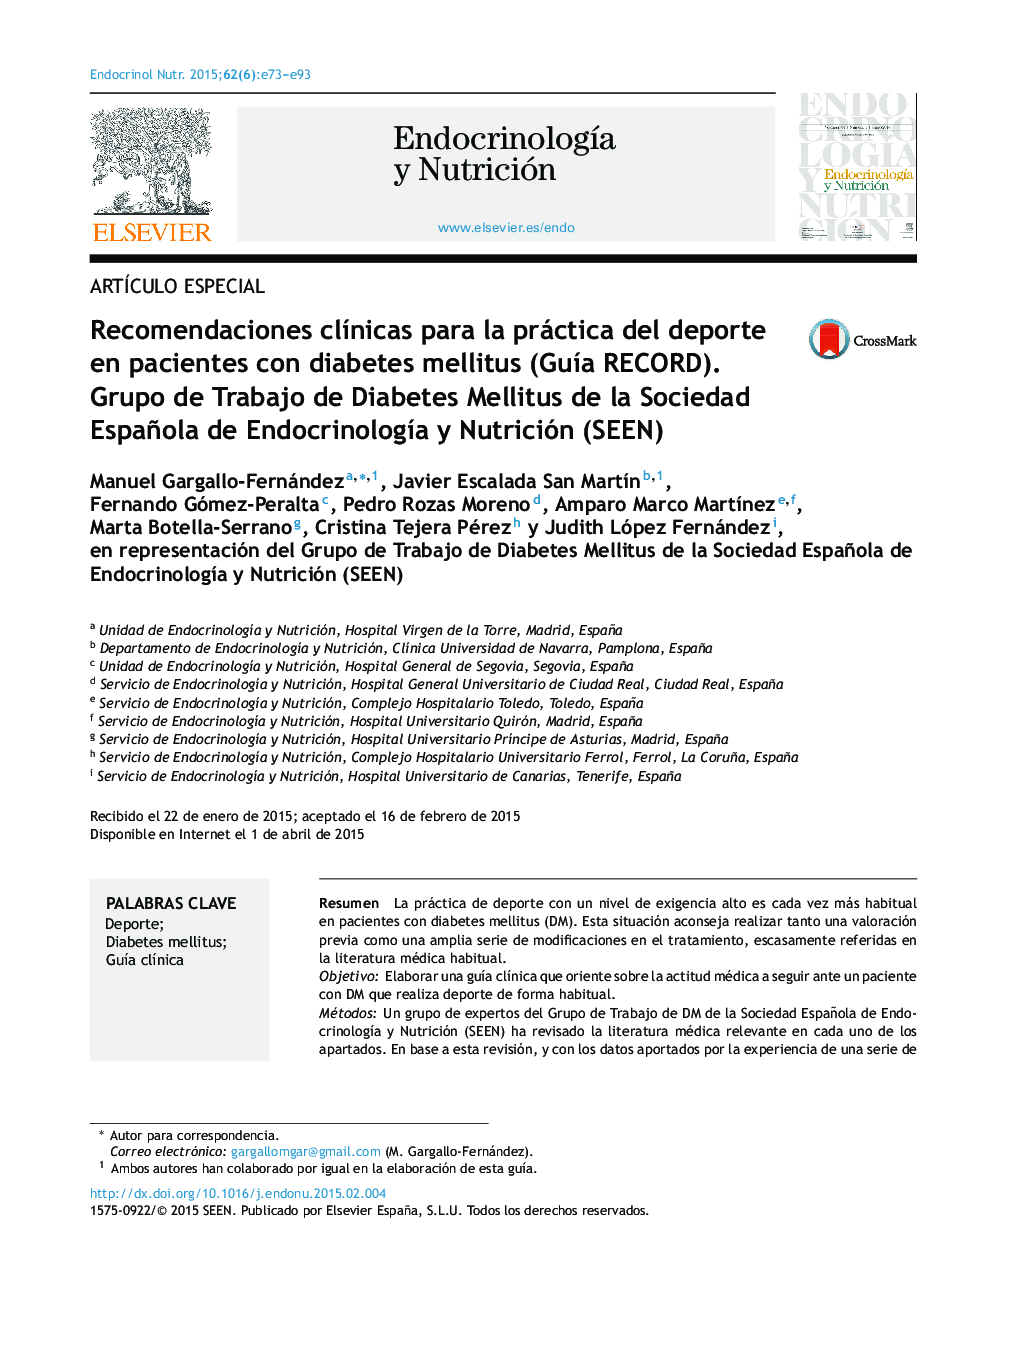 Recomendaciones clínicas para la práctica del deporte en pacientes con diabetes mellitus (Guía RECORD). Grupo de Trabajo de Diabetes Mellitus de la Sociedad Española de Endocrinología y Nutrición (SEEN)